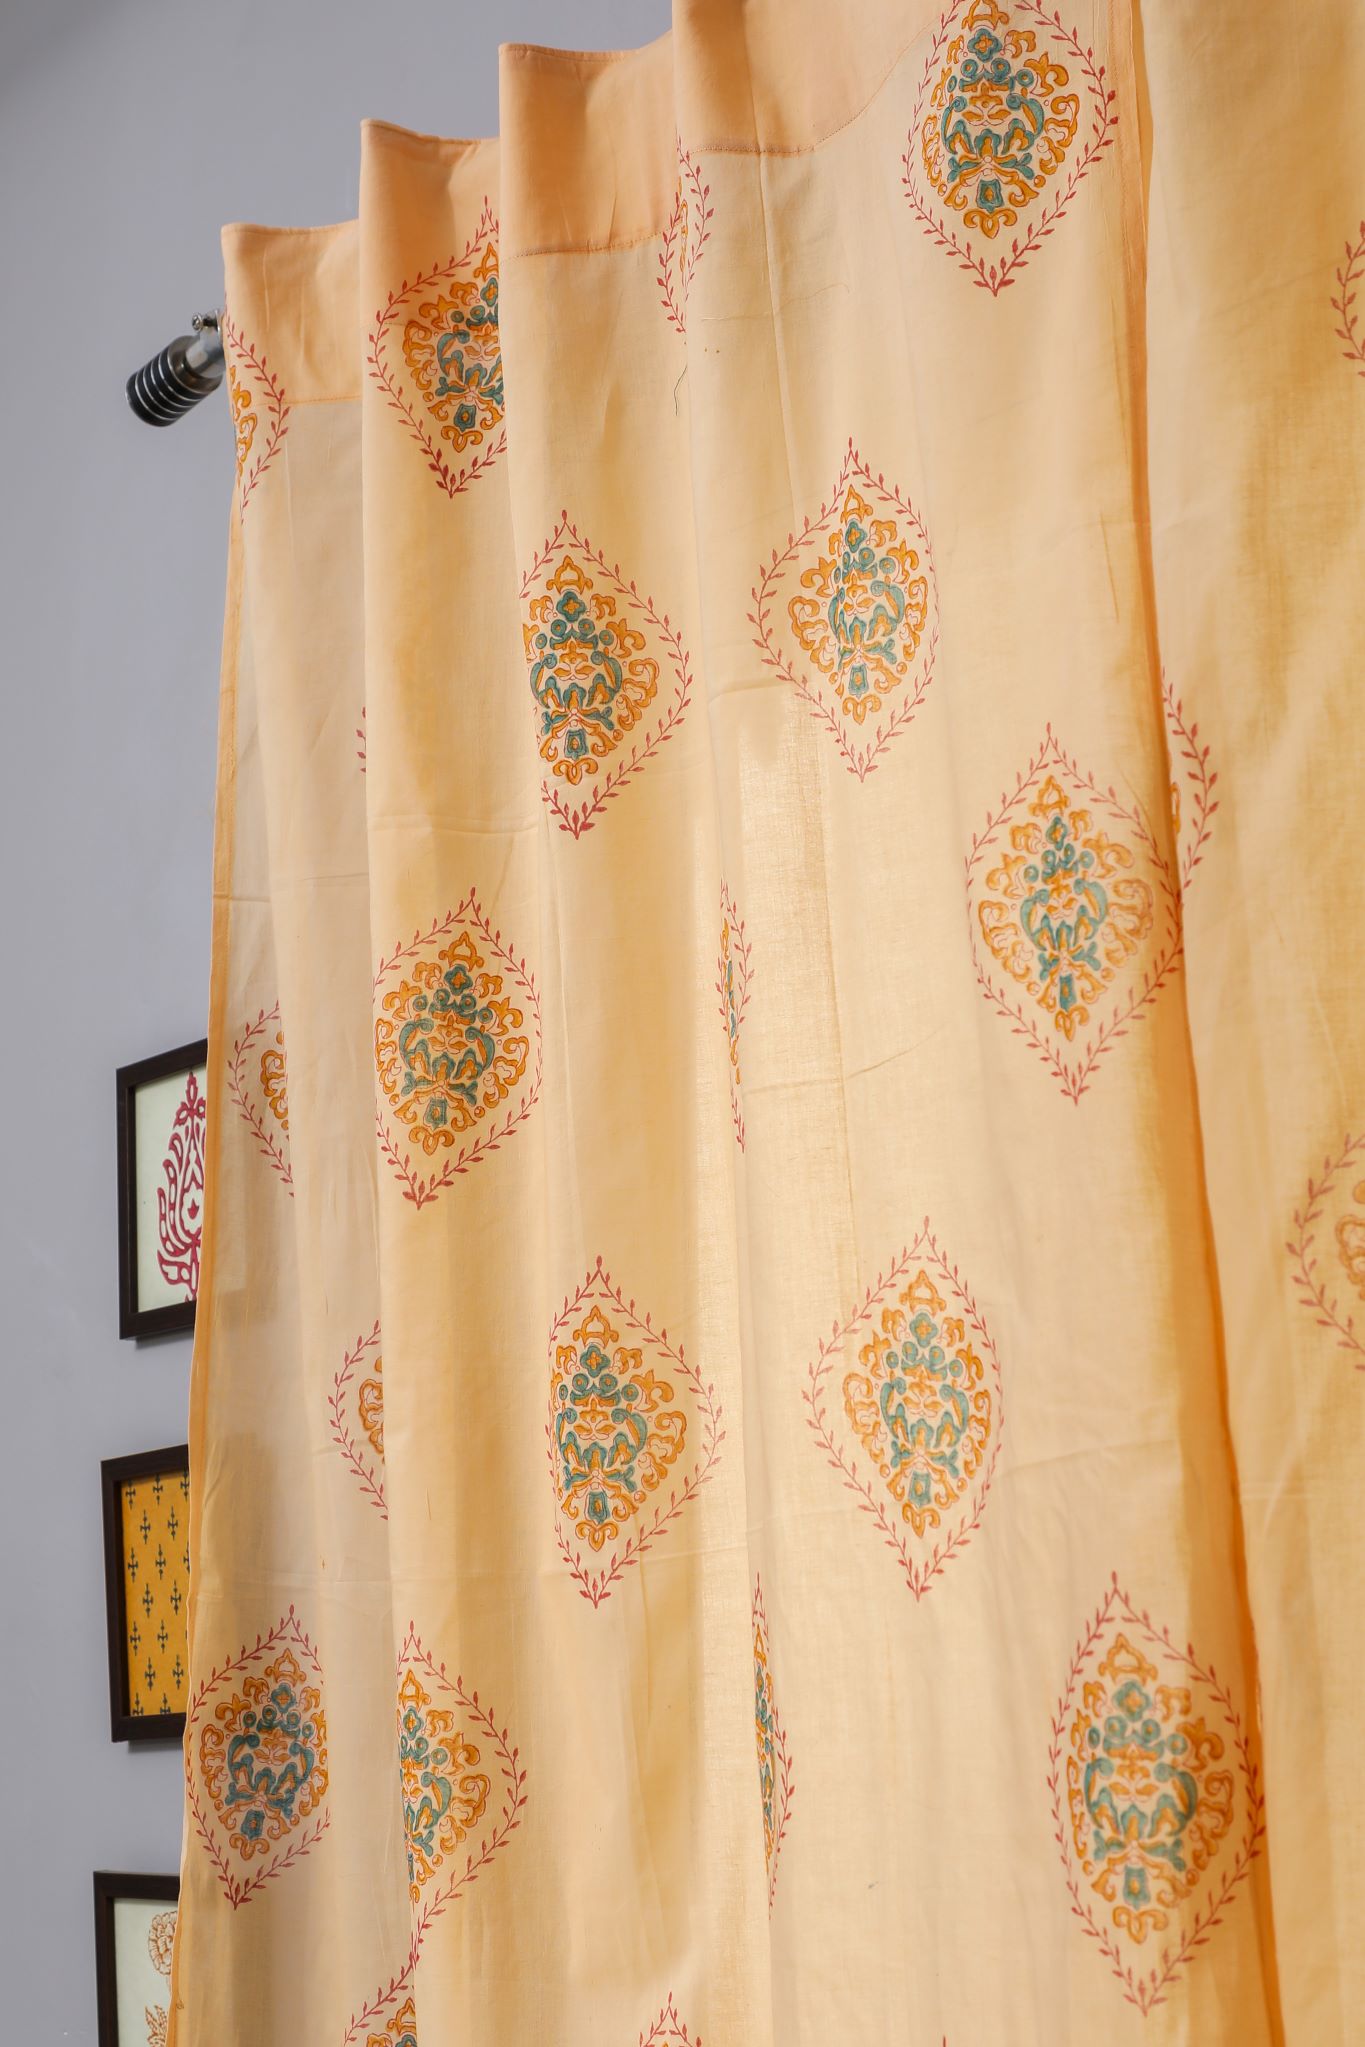 SootiSyahi 'Baileya Red' Handblock Printed Cotton Window Curtain - SootiSyahi